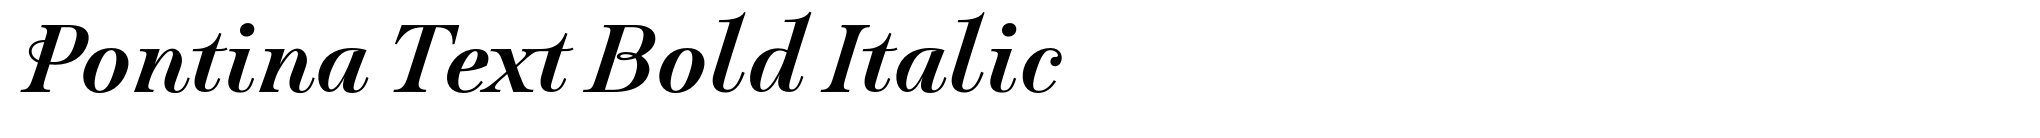 Pontina Text Bold Italic image